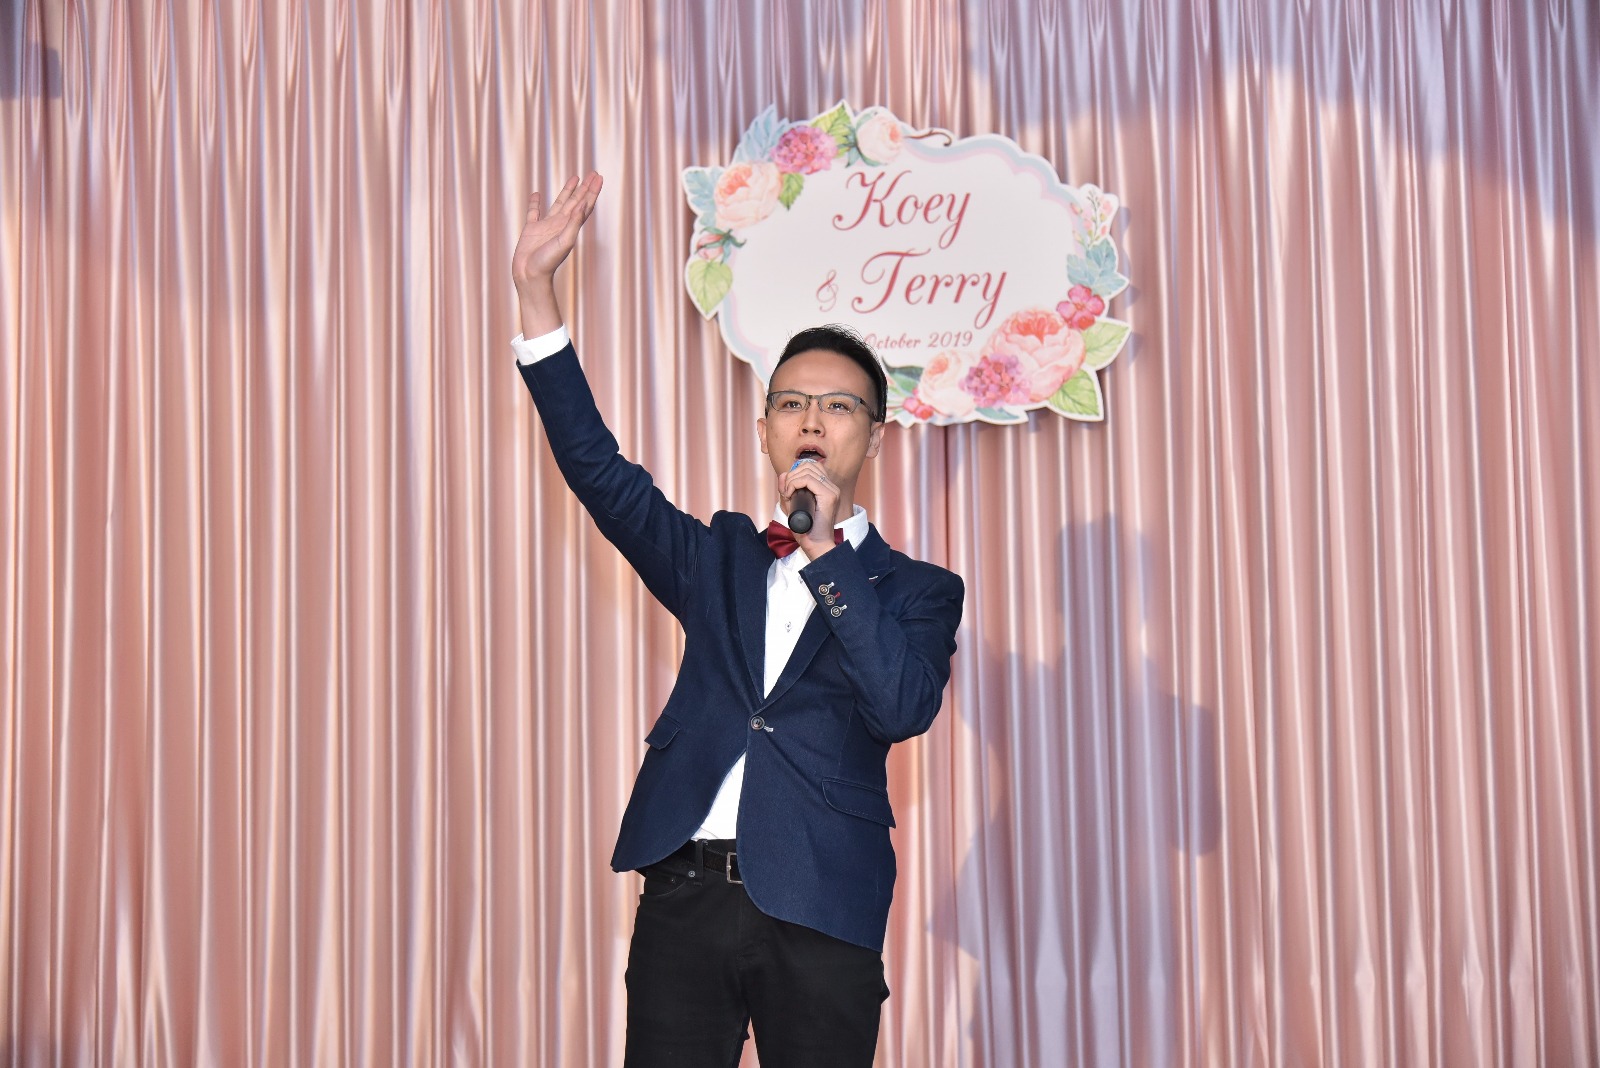 Samson Lau司儀工作紀錄: 「婚宴司儀」24 Oct 2019 Koey & Terry  @ 海港薈